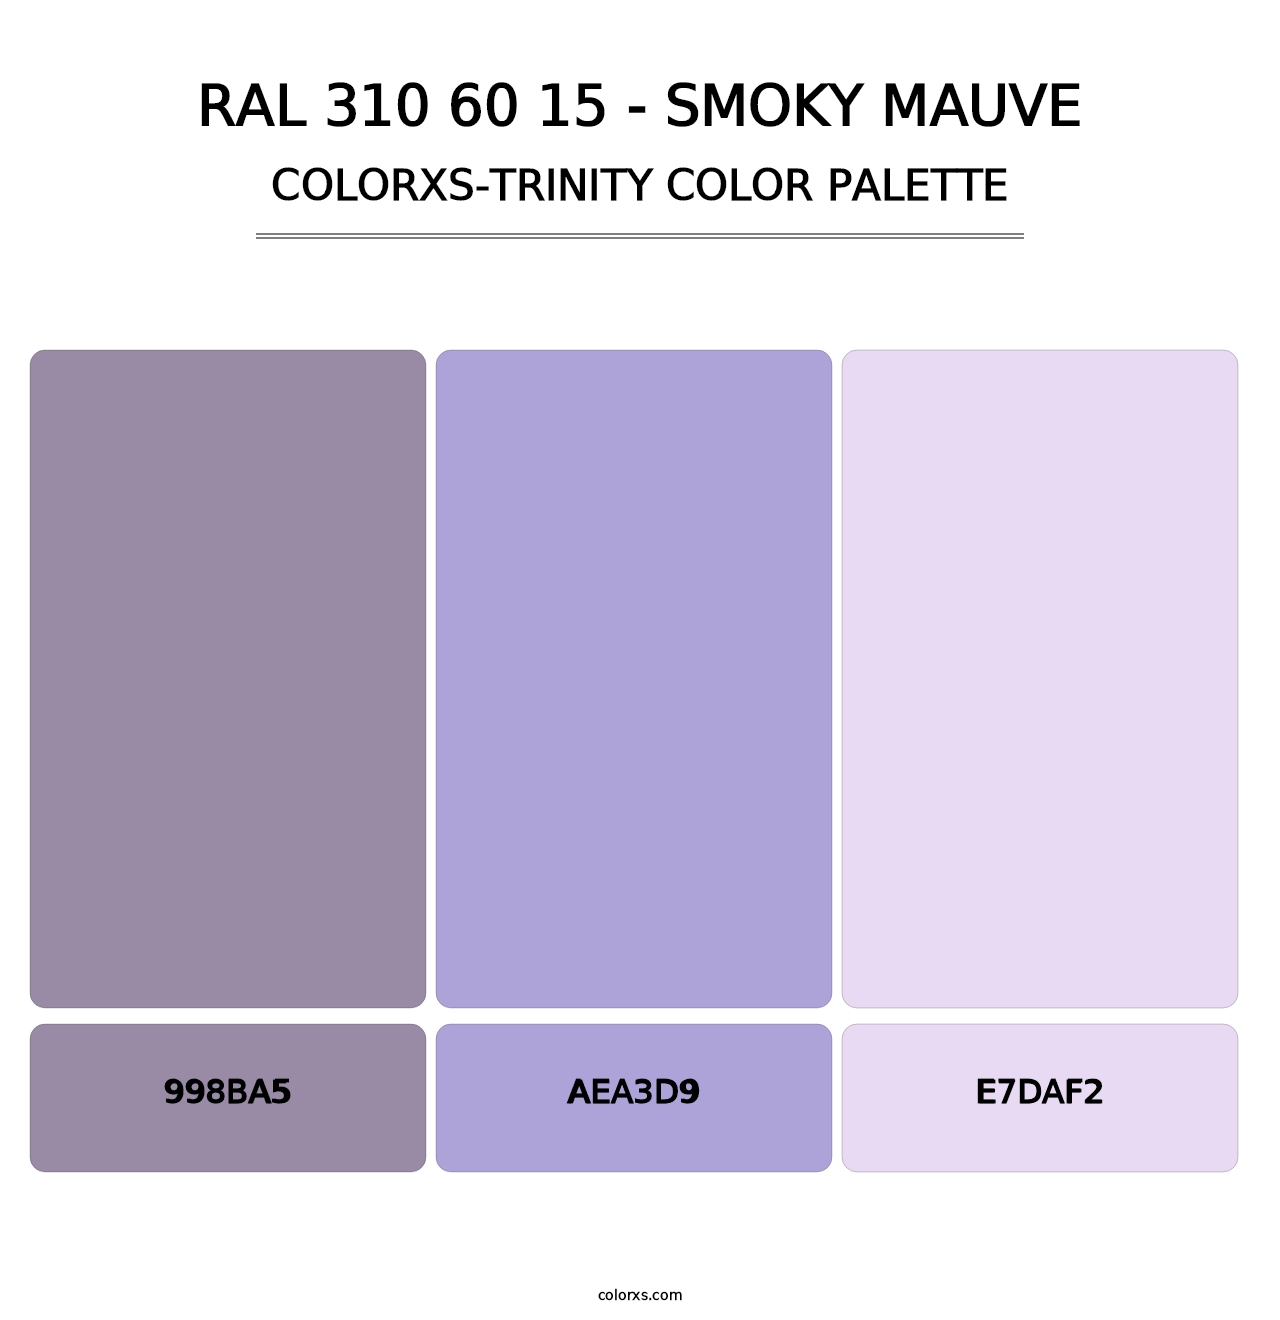 RAL 310 60 15 - Smoky Mauve - Colorxs Trinity Palette